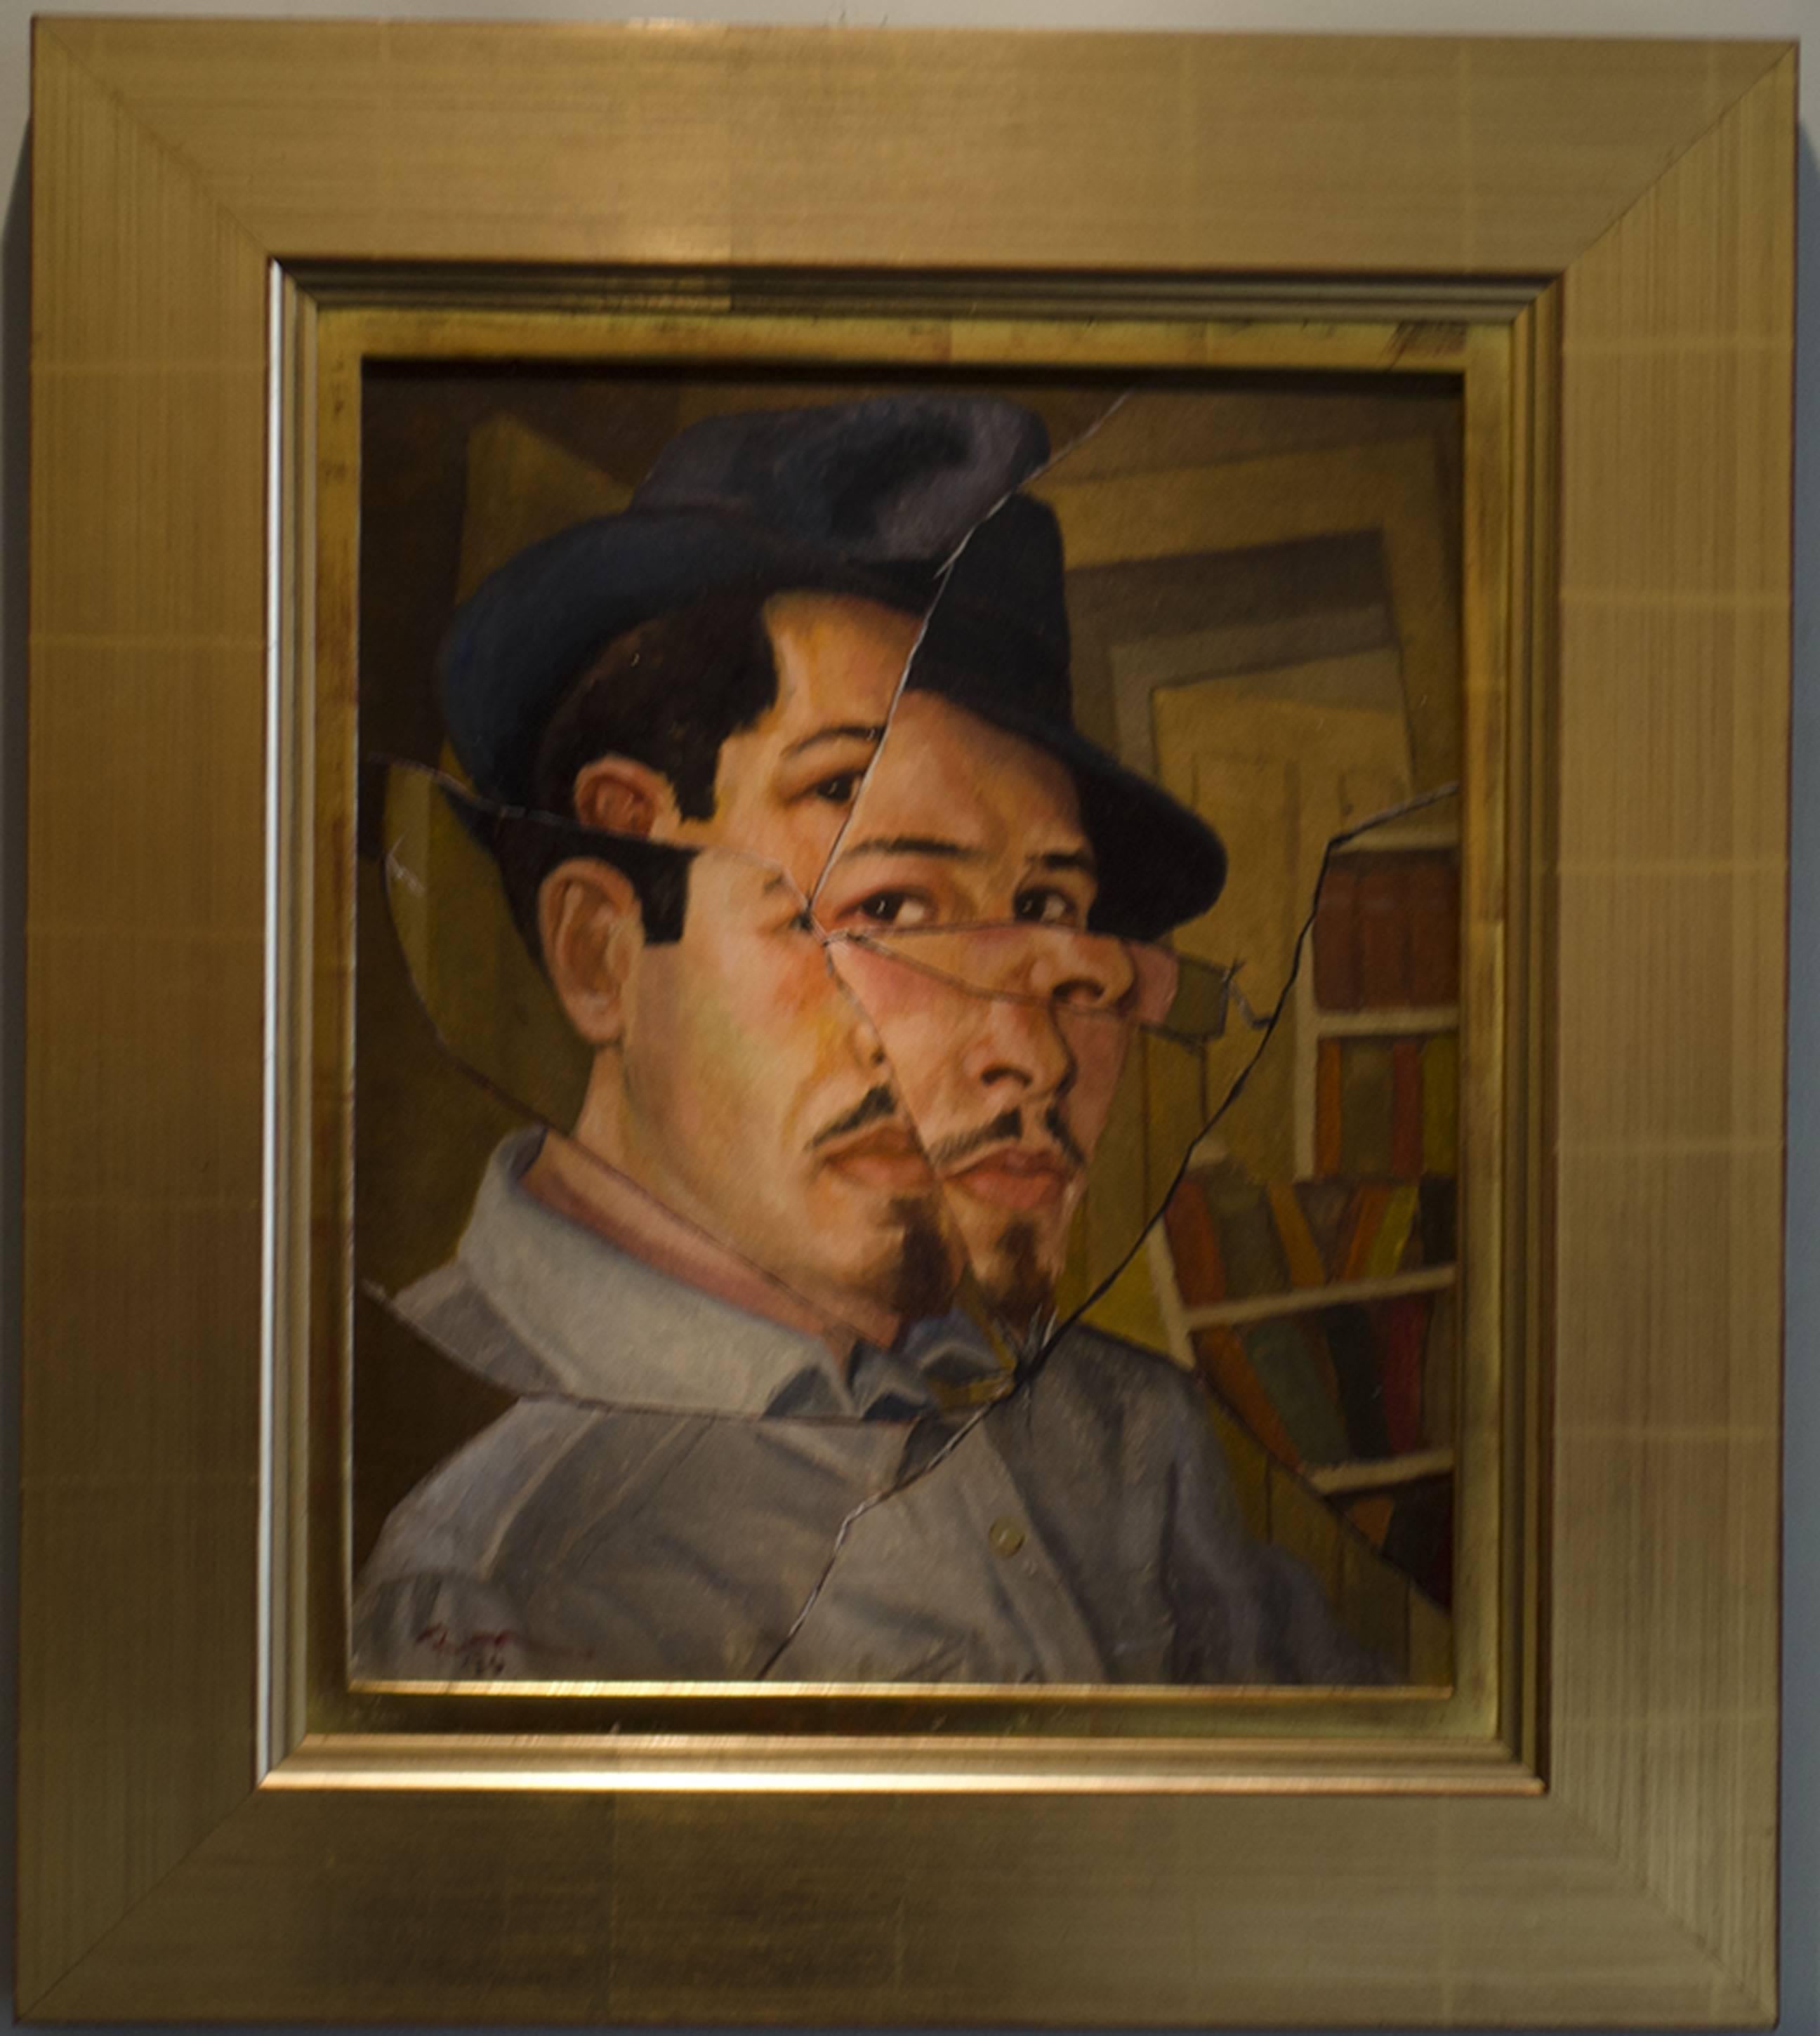 Broken-Spiegel, verbrochen – Painting von Ron Blumberg